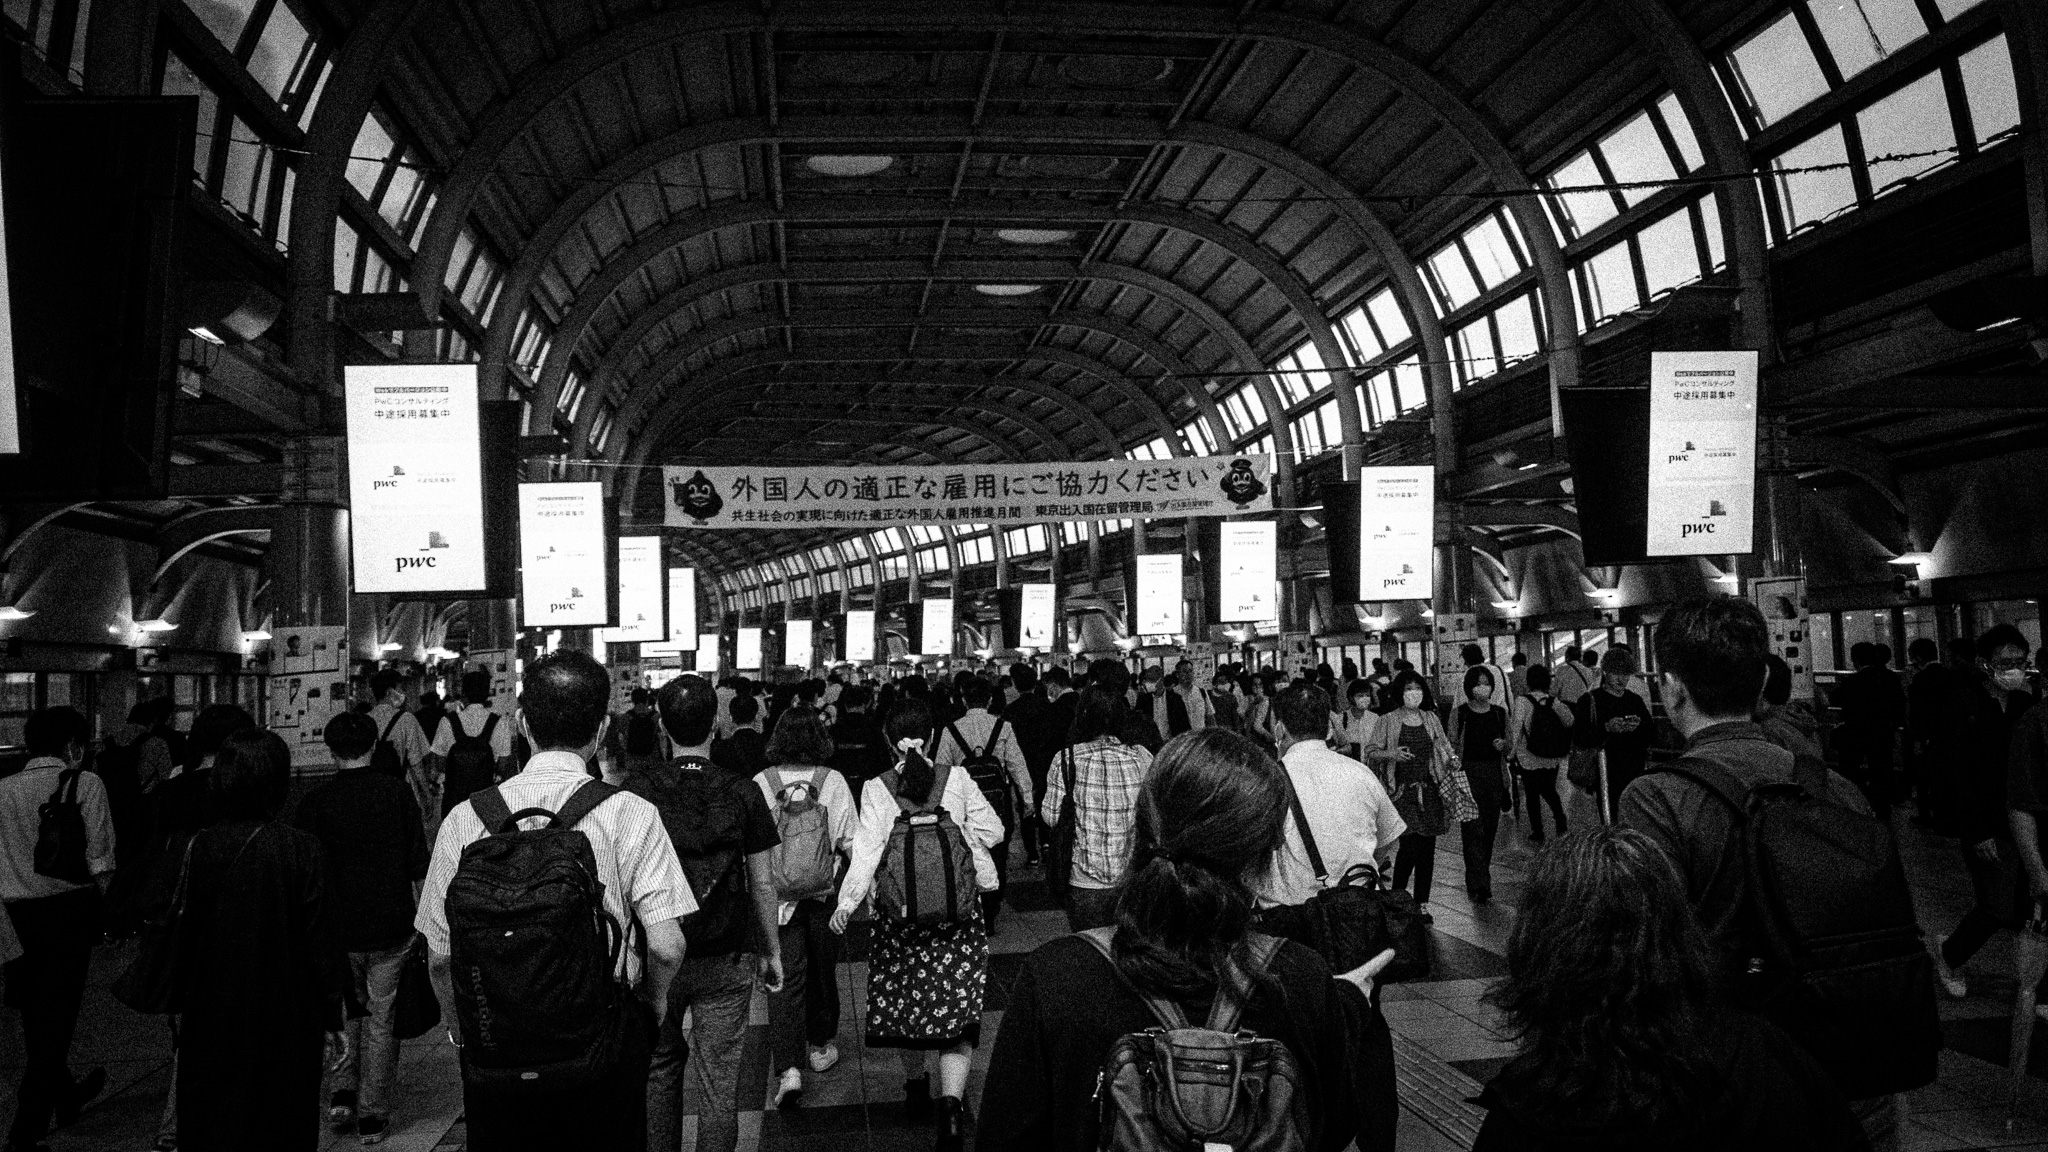 品川駅の自由通路。「社畜ロード」と呼ばれるらしい。